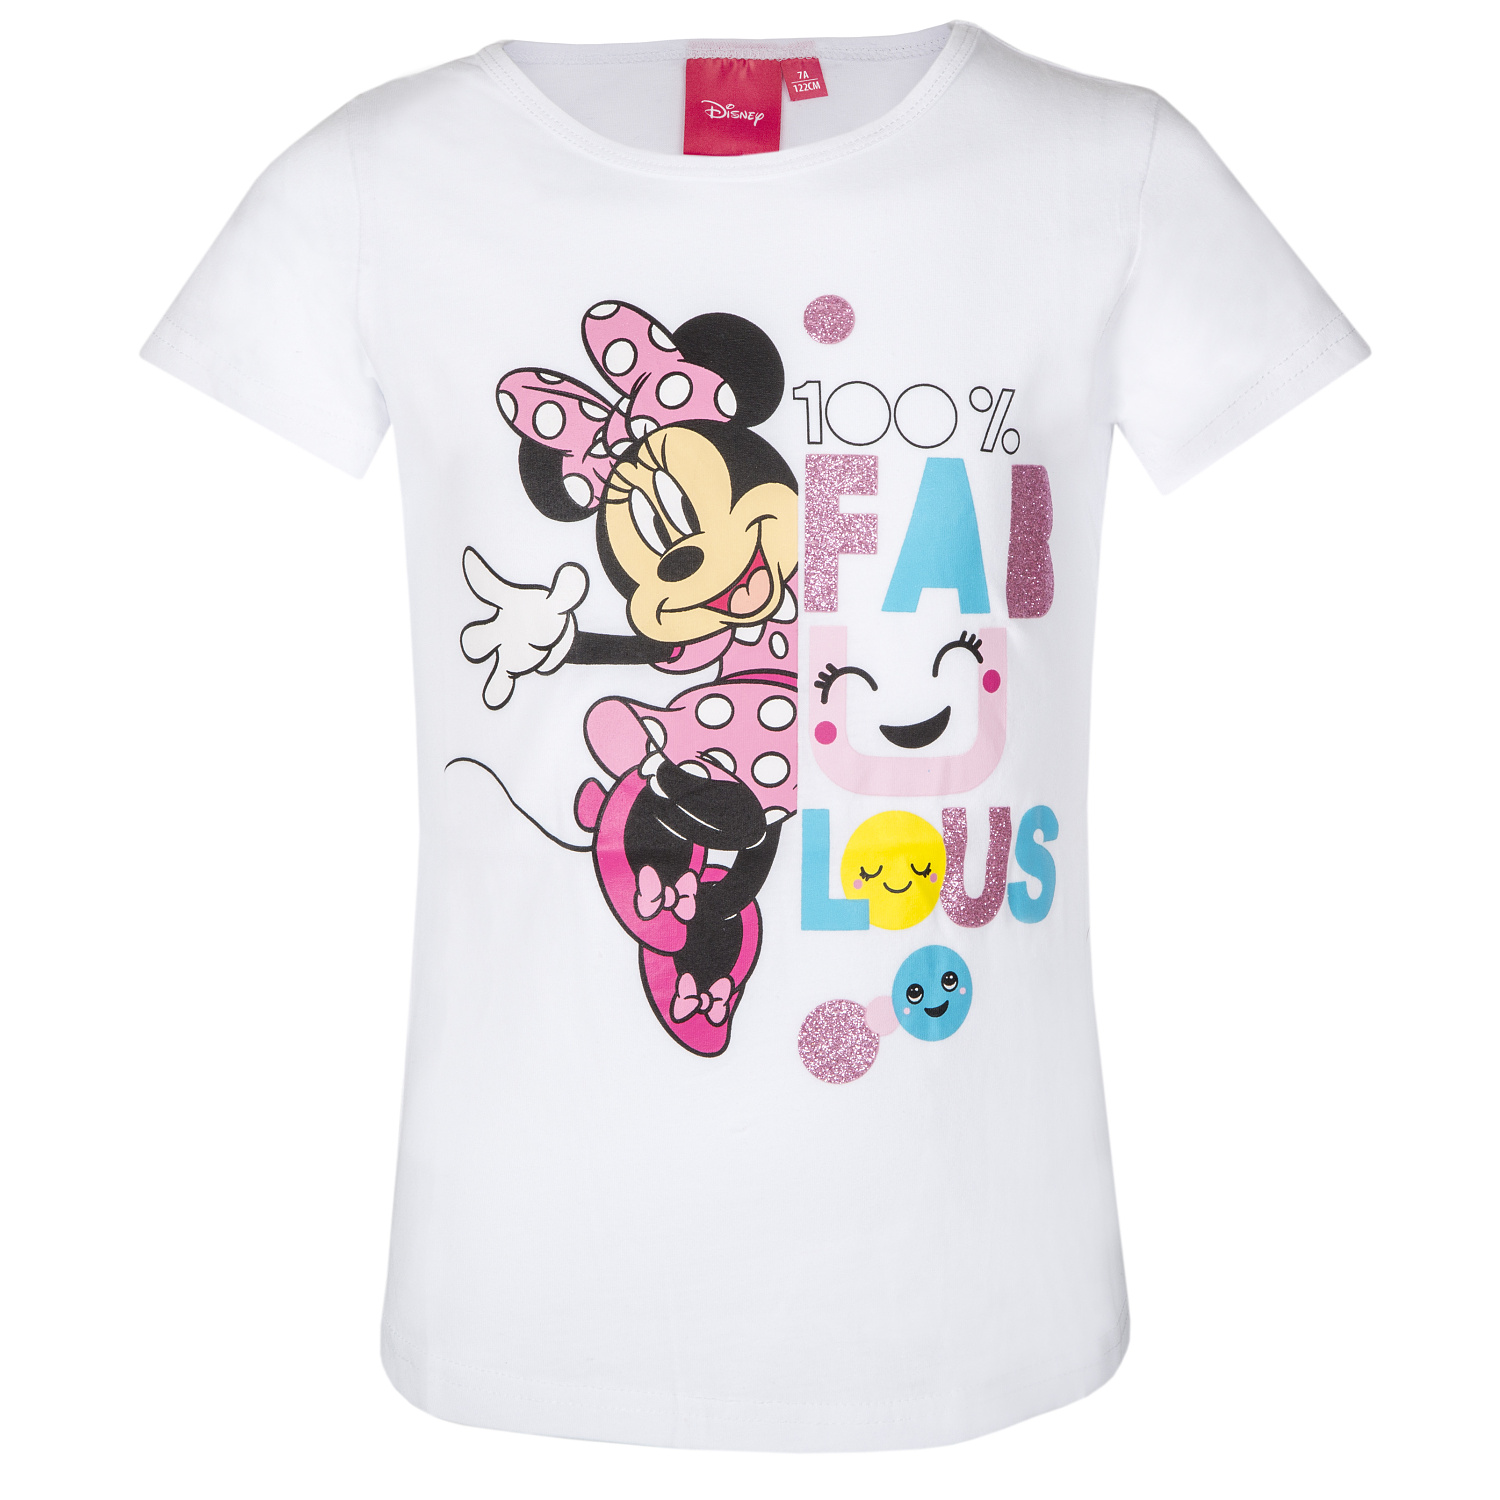 Minnie Mouse - licence Dívčí tričko - Minnie Mouse 201, bílá Barva: Bílá, Velikost: 116